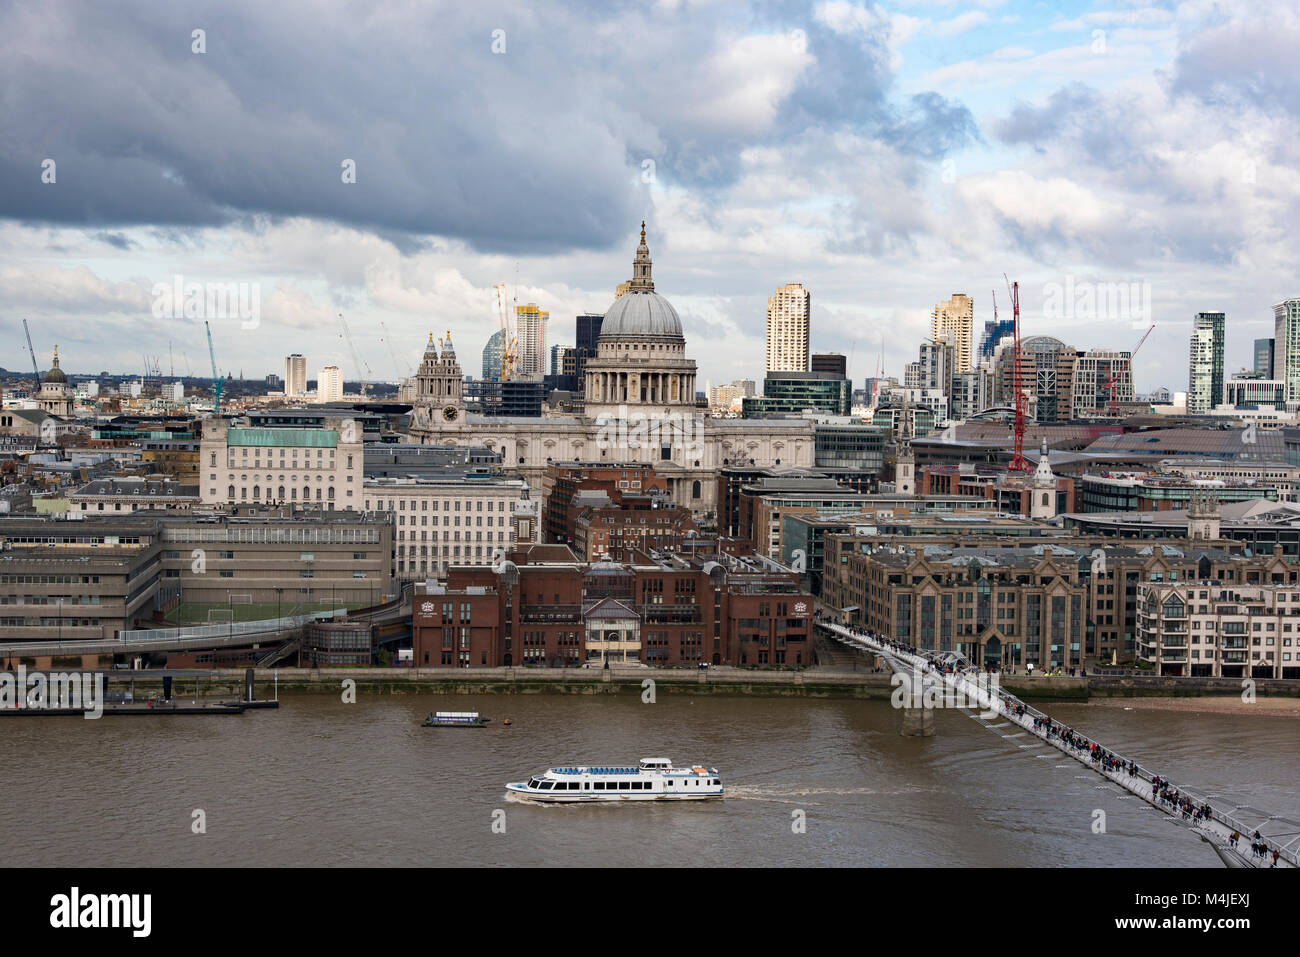 Blick auf die Stadt London Schule und St. Paul's Cathedral über die Themse, London, England, Vereinigtes Königreich. Stockfoto